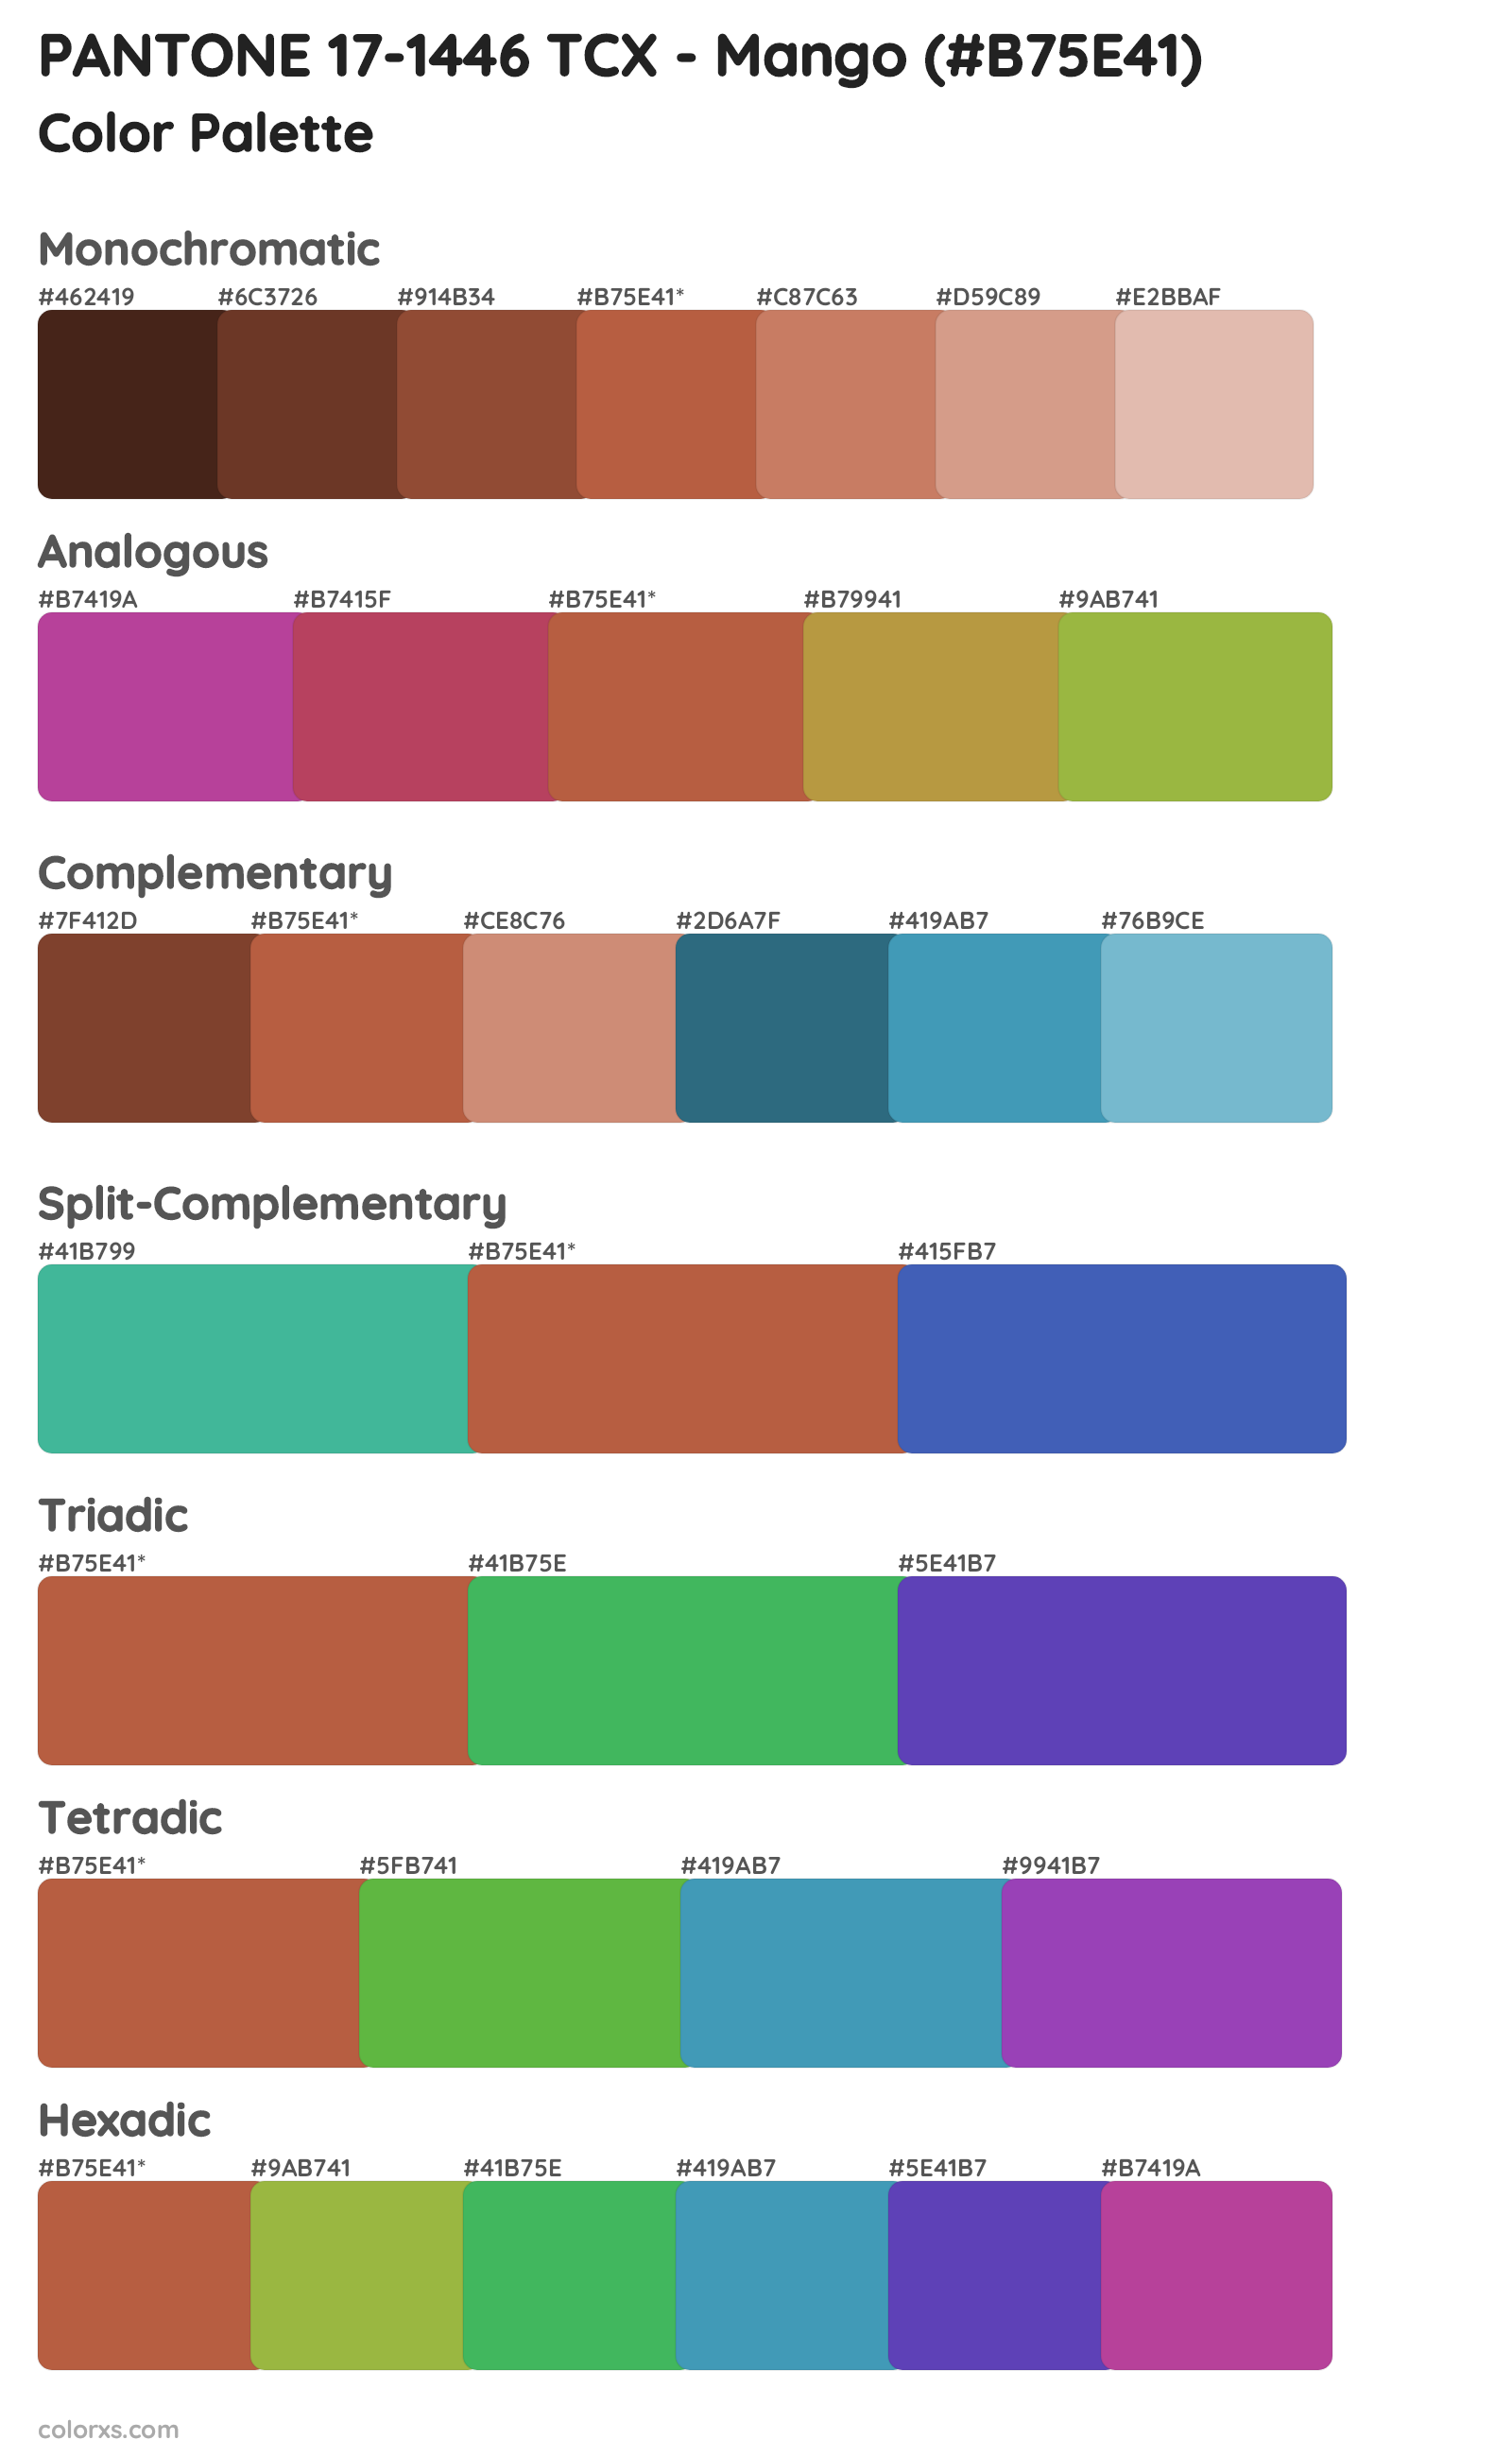 PANTONE 17-1446 TCX - Mango Color Scheme Palettes